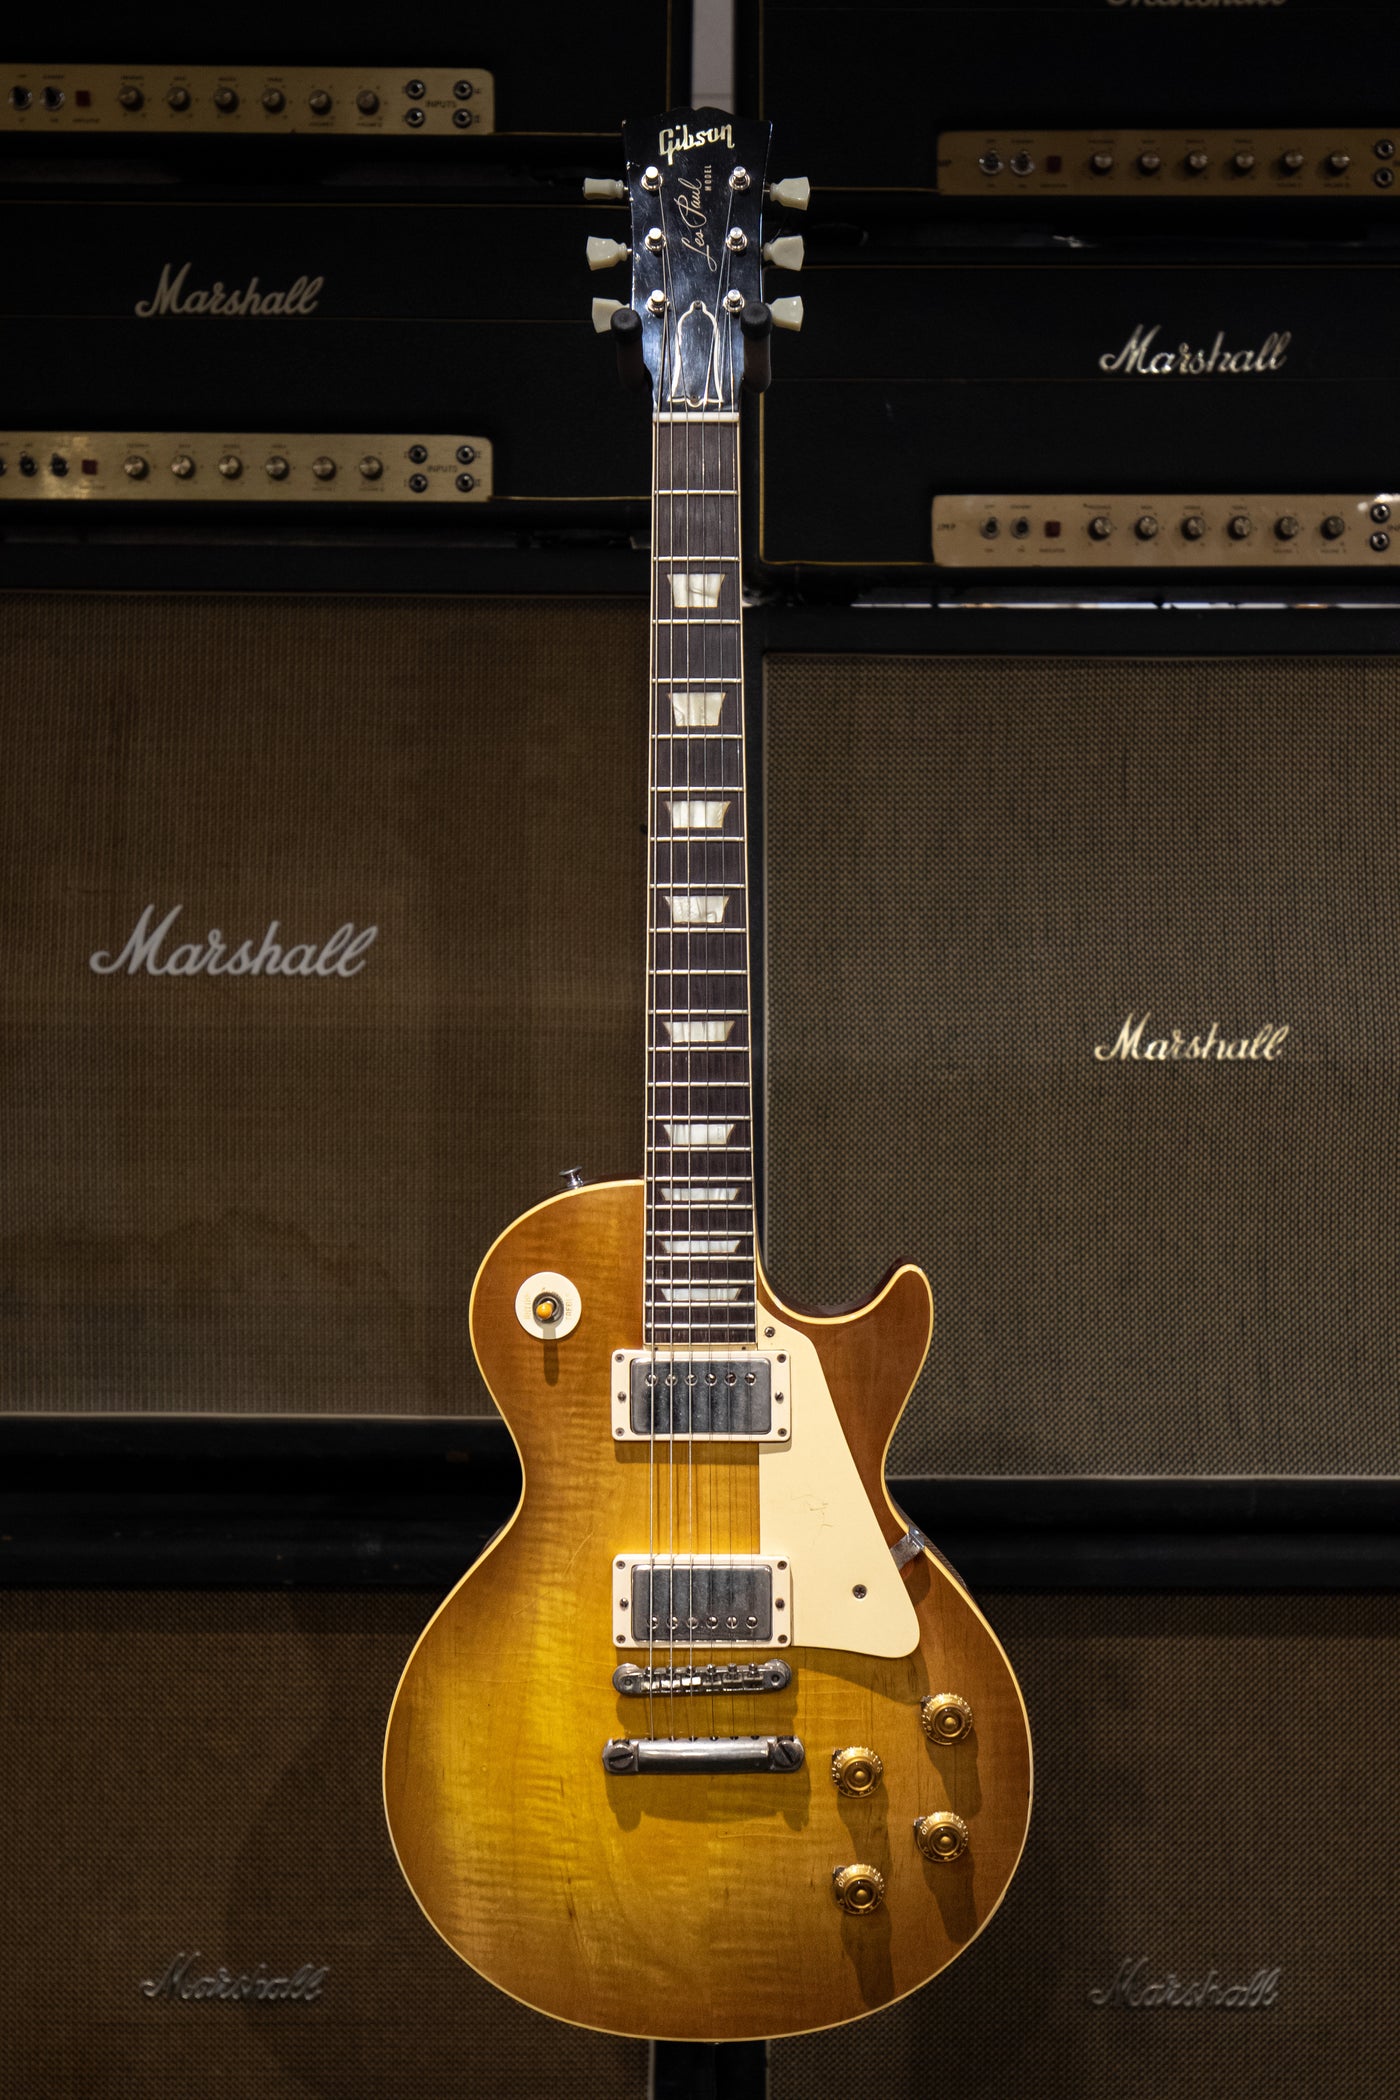 1960 Gibson Les Paul - Sunburst